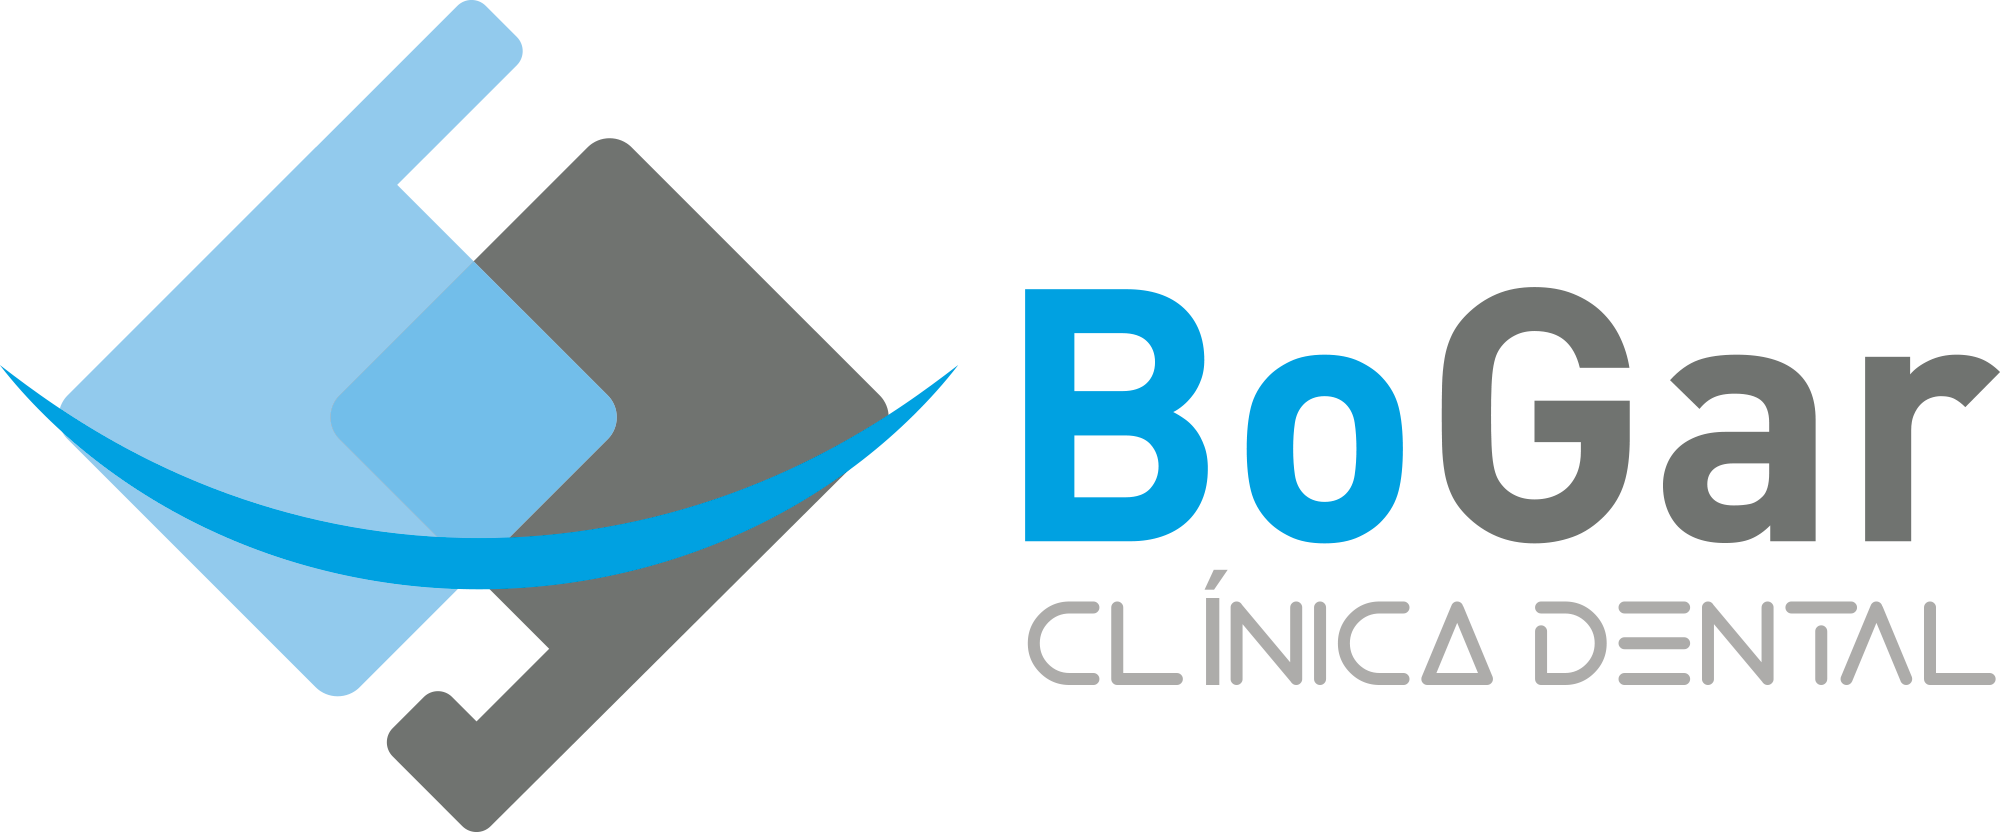 Logotipo de la clínica Bogar Clínica Dental